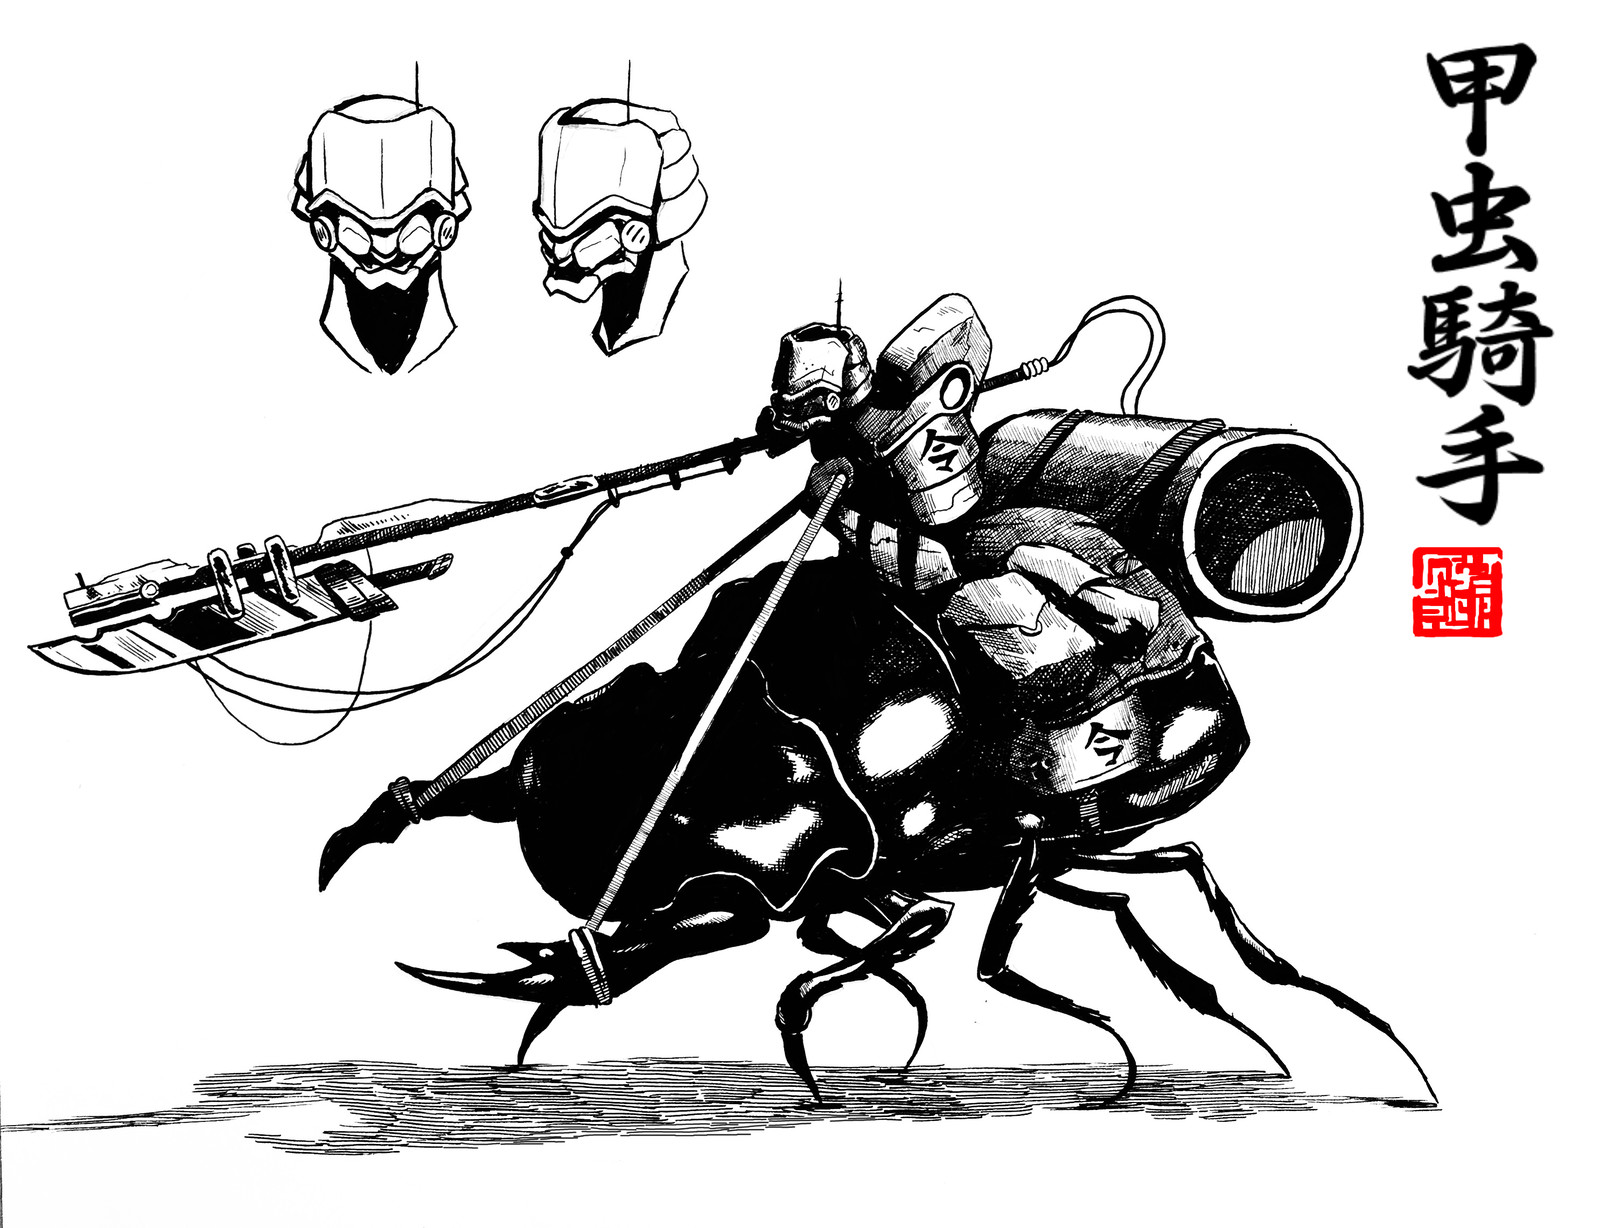 Tatsu Sentinels: Stag Rider